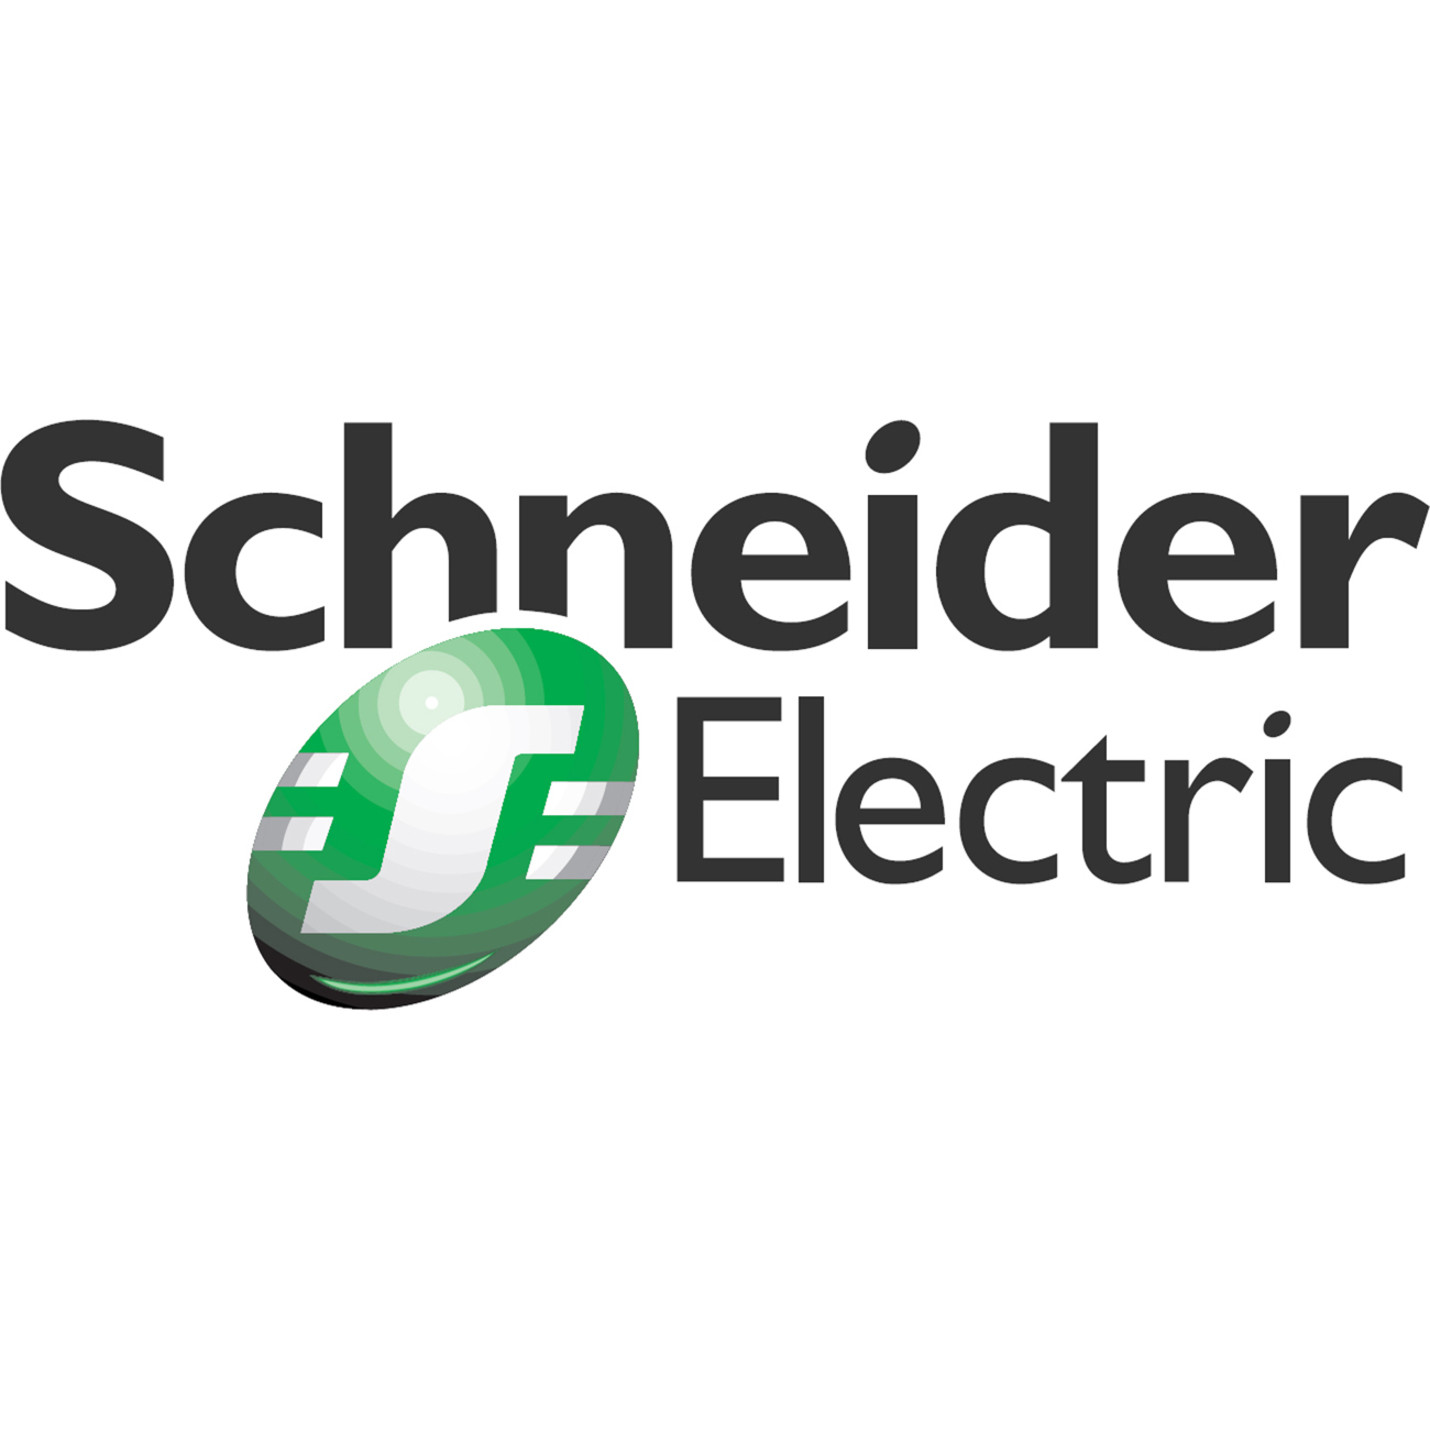 APC by Schneider Electric Scheduled AssemblyService24 x 7On-siteInstallationPhysical WASSEMEXBAT-PX-33